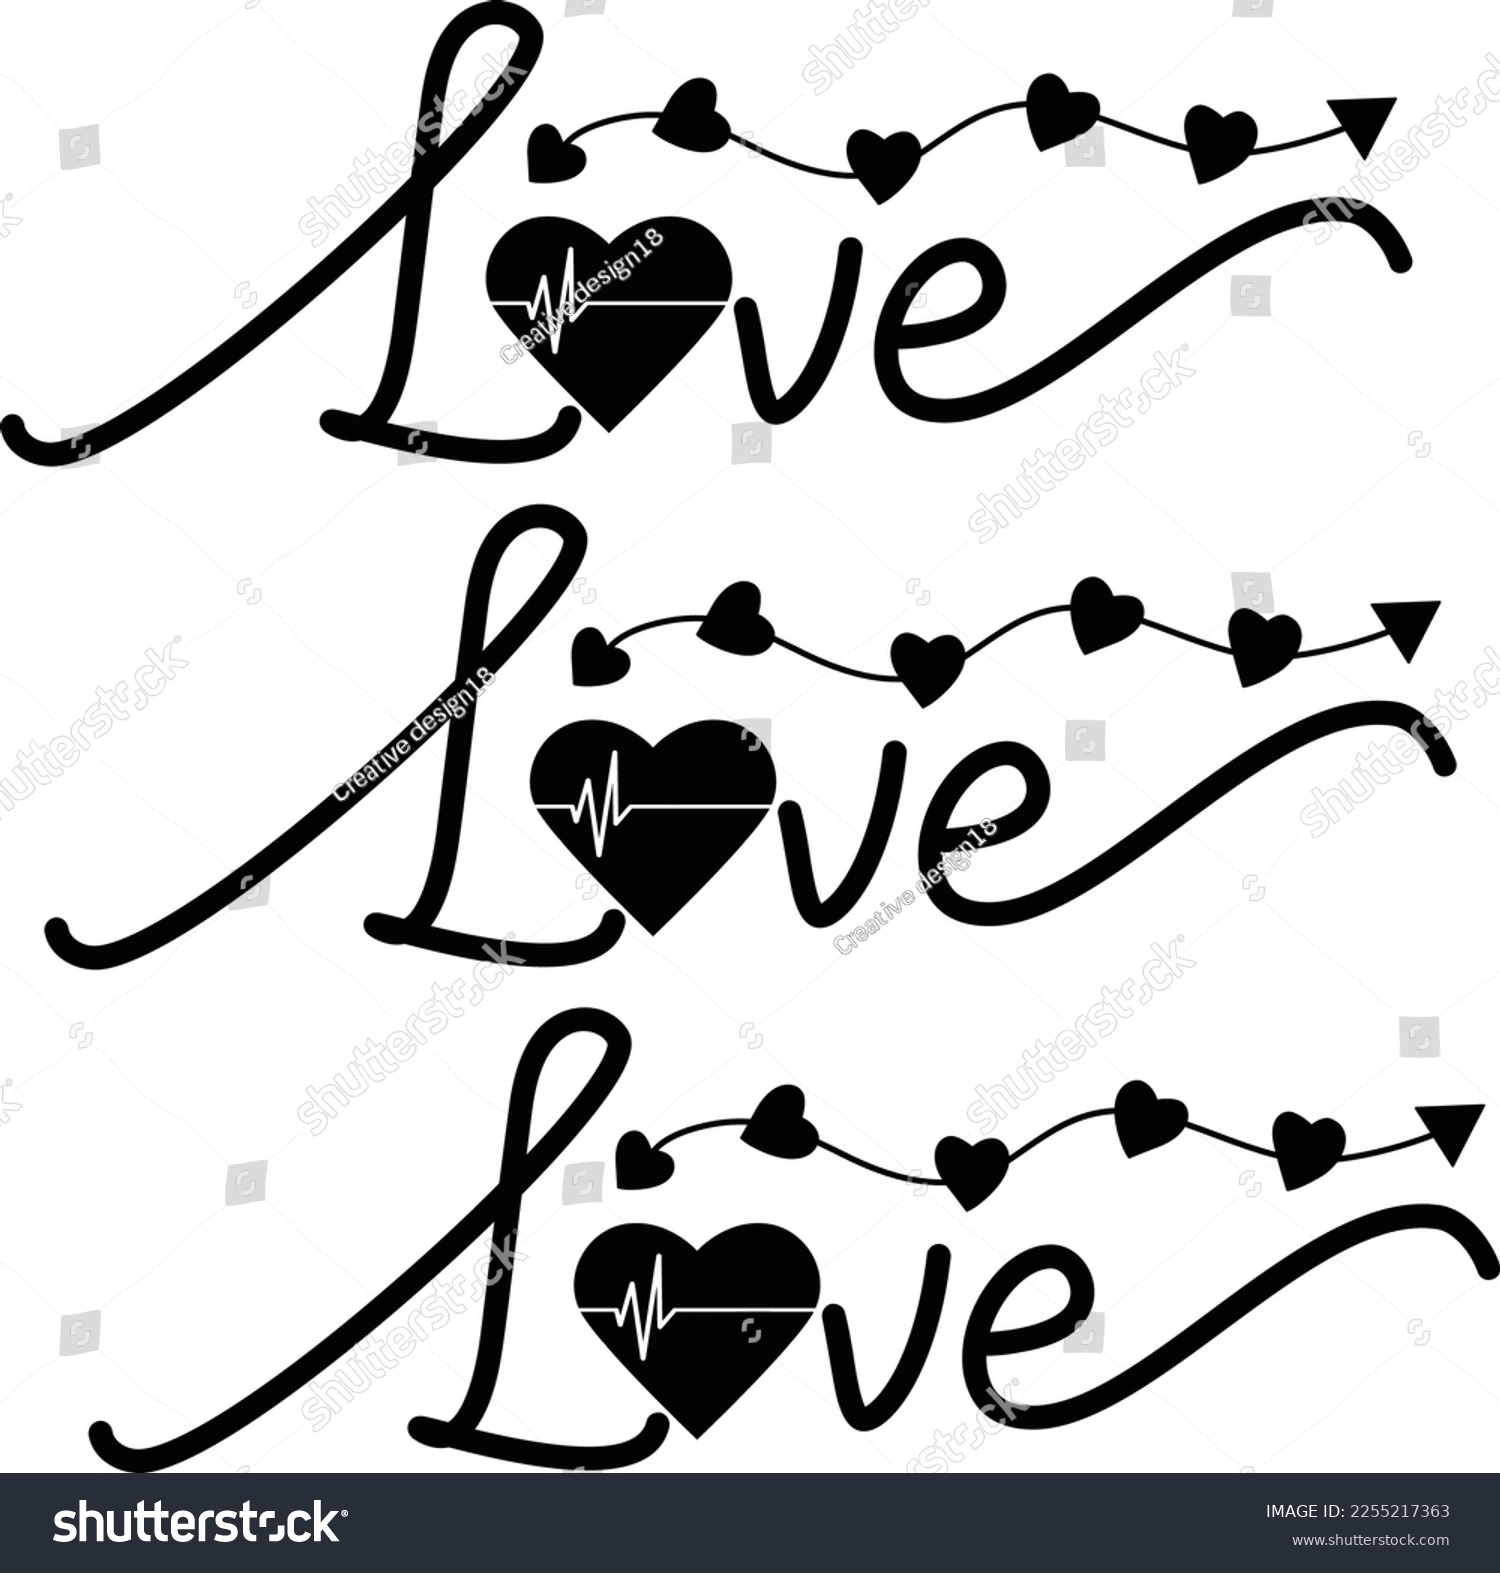 SVG of 
Love love love SVG design svg